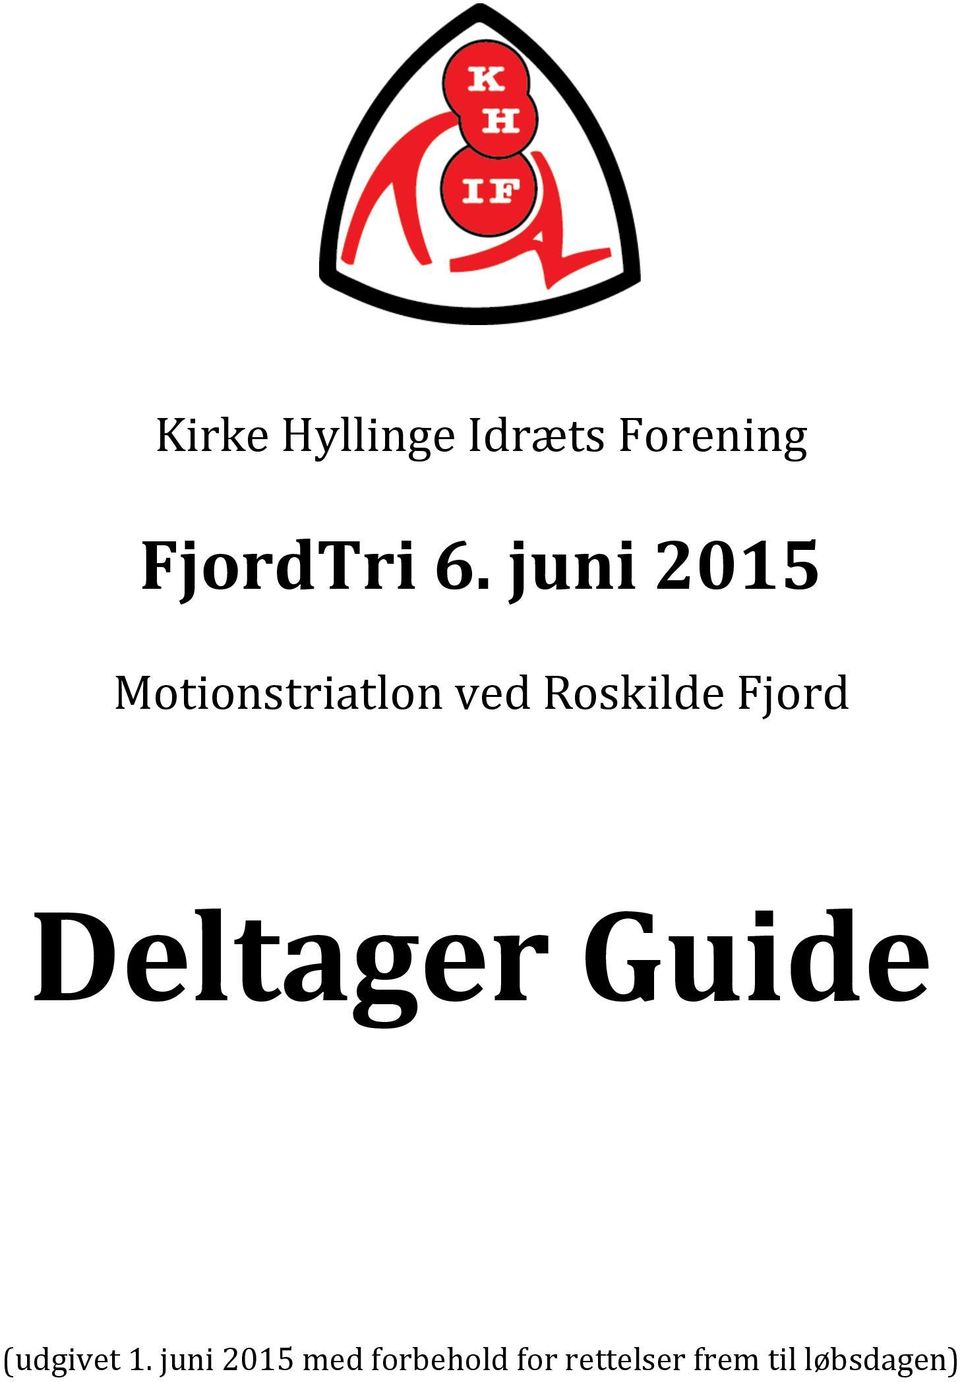 Fjord Deltager Guide (udgivet 1.